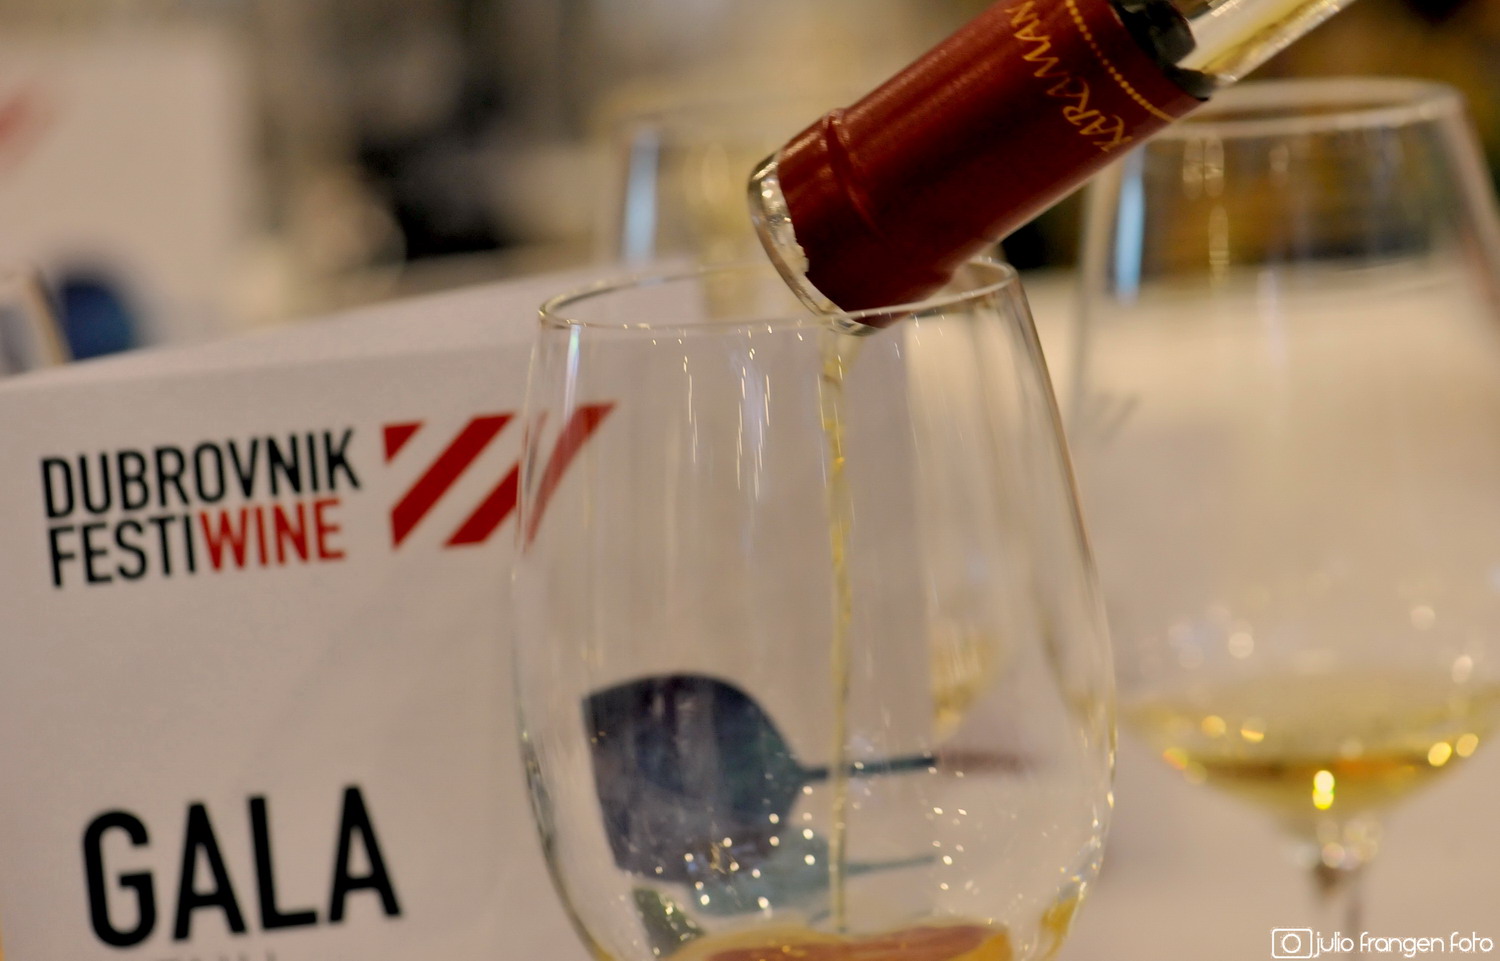 Vrhunska gastronomija i vina na gala večeri Dubrovnik Festiwinea